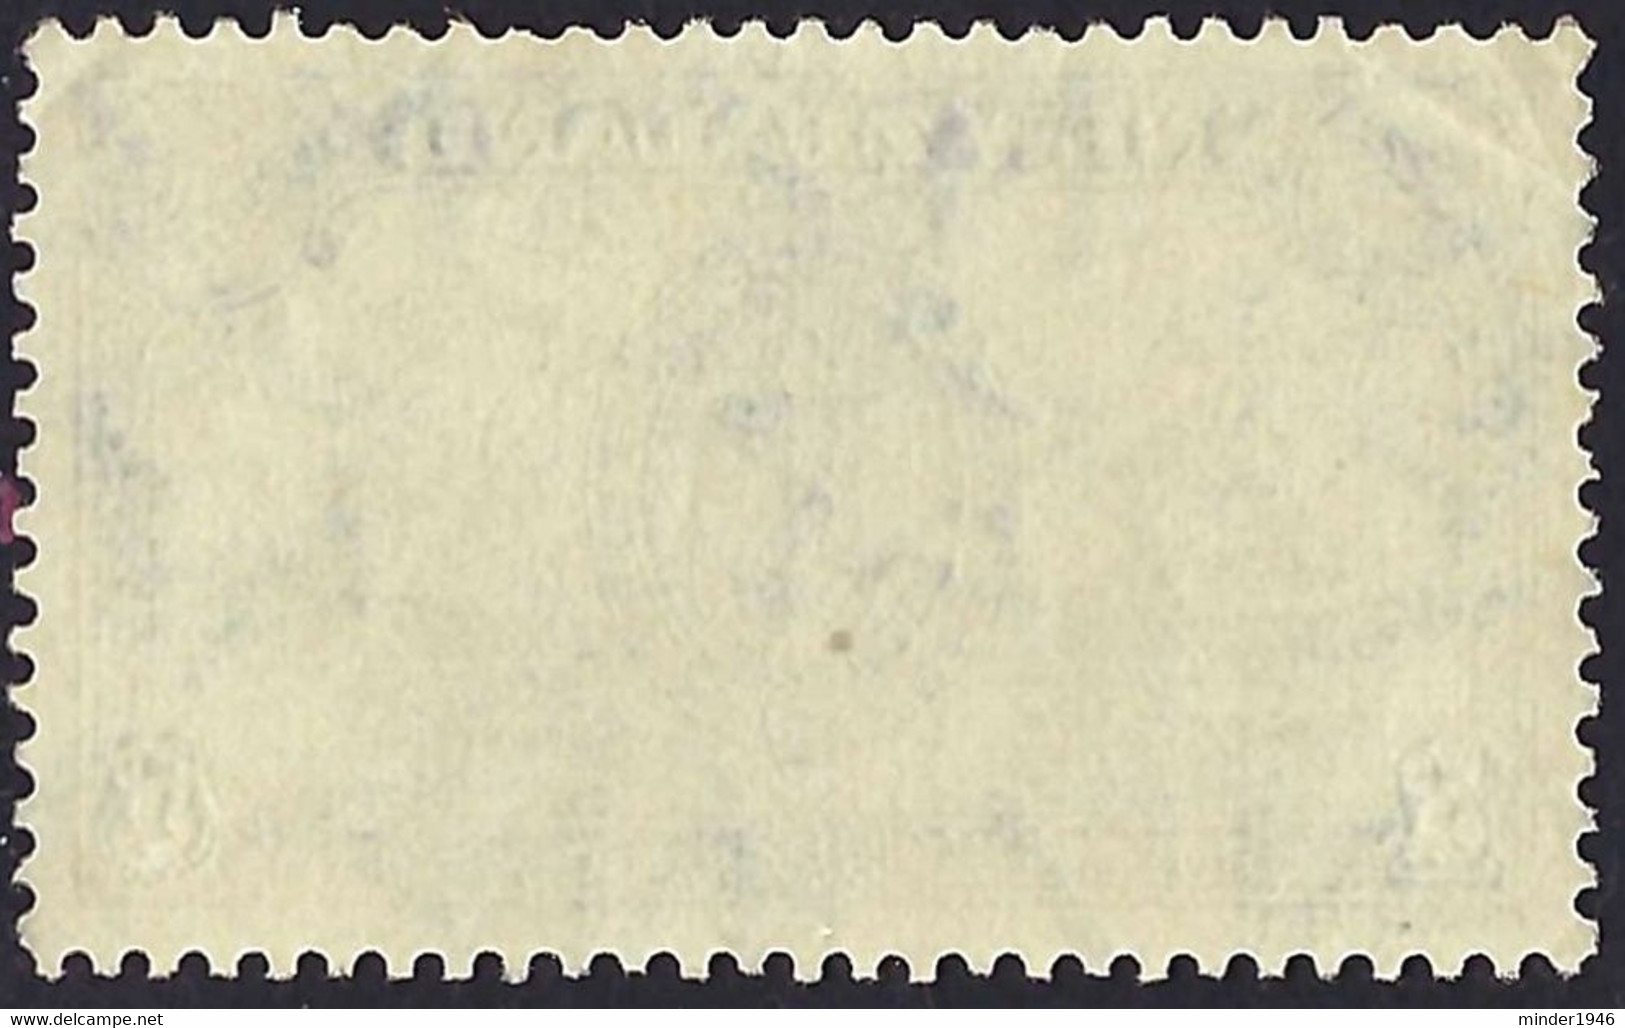 NEW ZEALAND 1946 QEII 5d Green & Ultramarine SG673 FU - Used Stamps